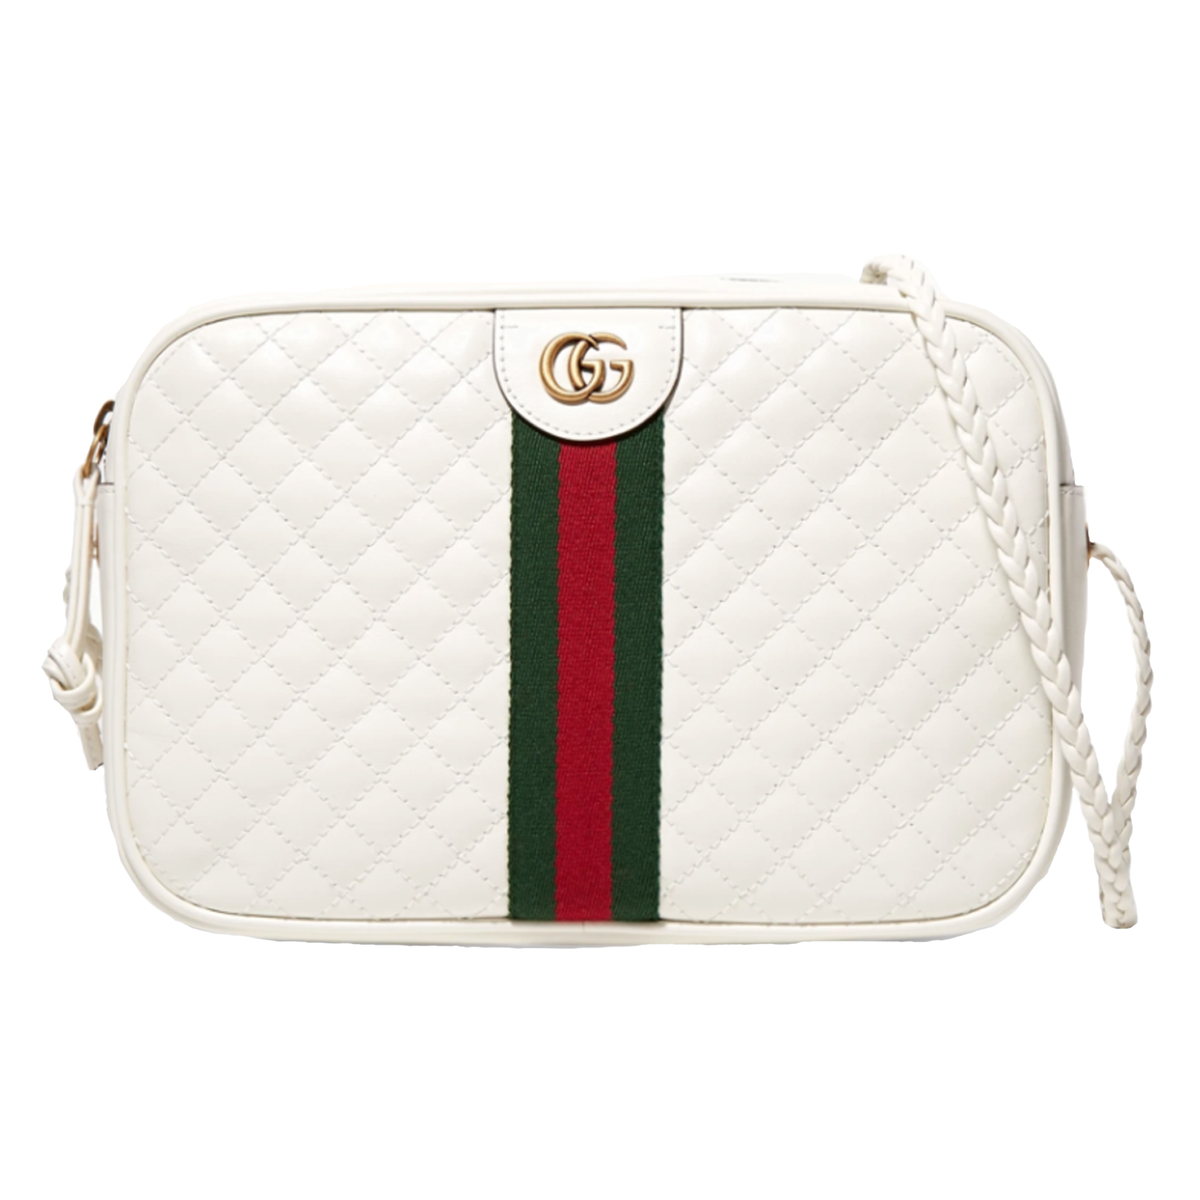 Gucci Bags & Handbags - Men - 763 products